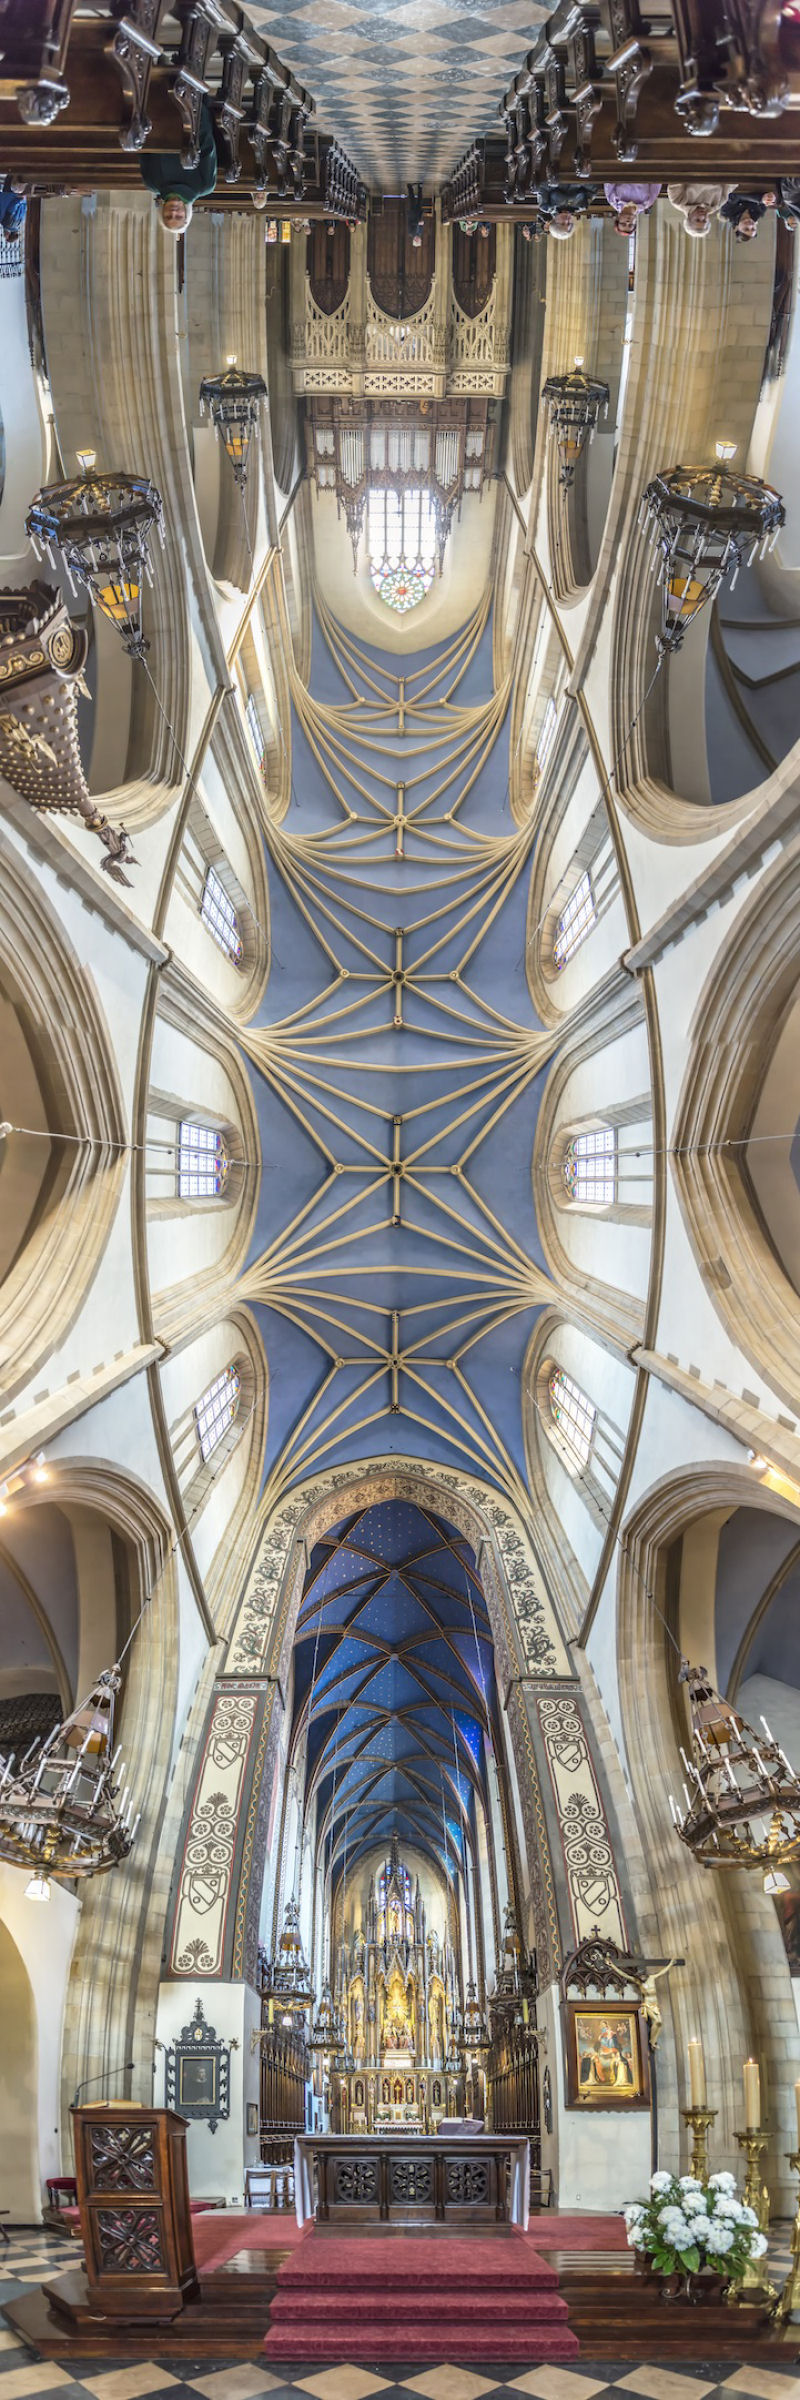 Novos panoramas verticais de igrejas por Richard Silver 05